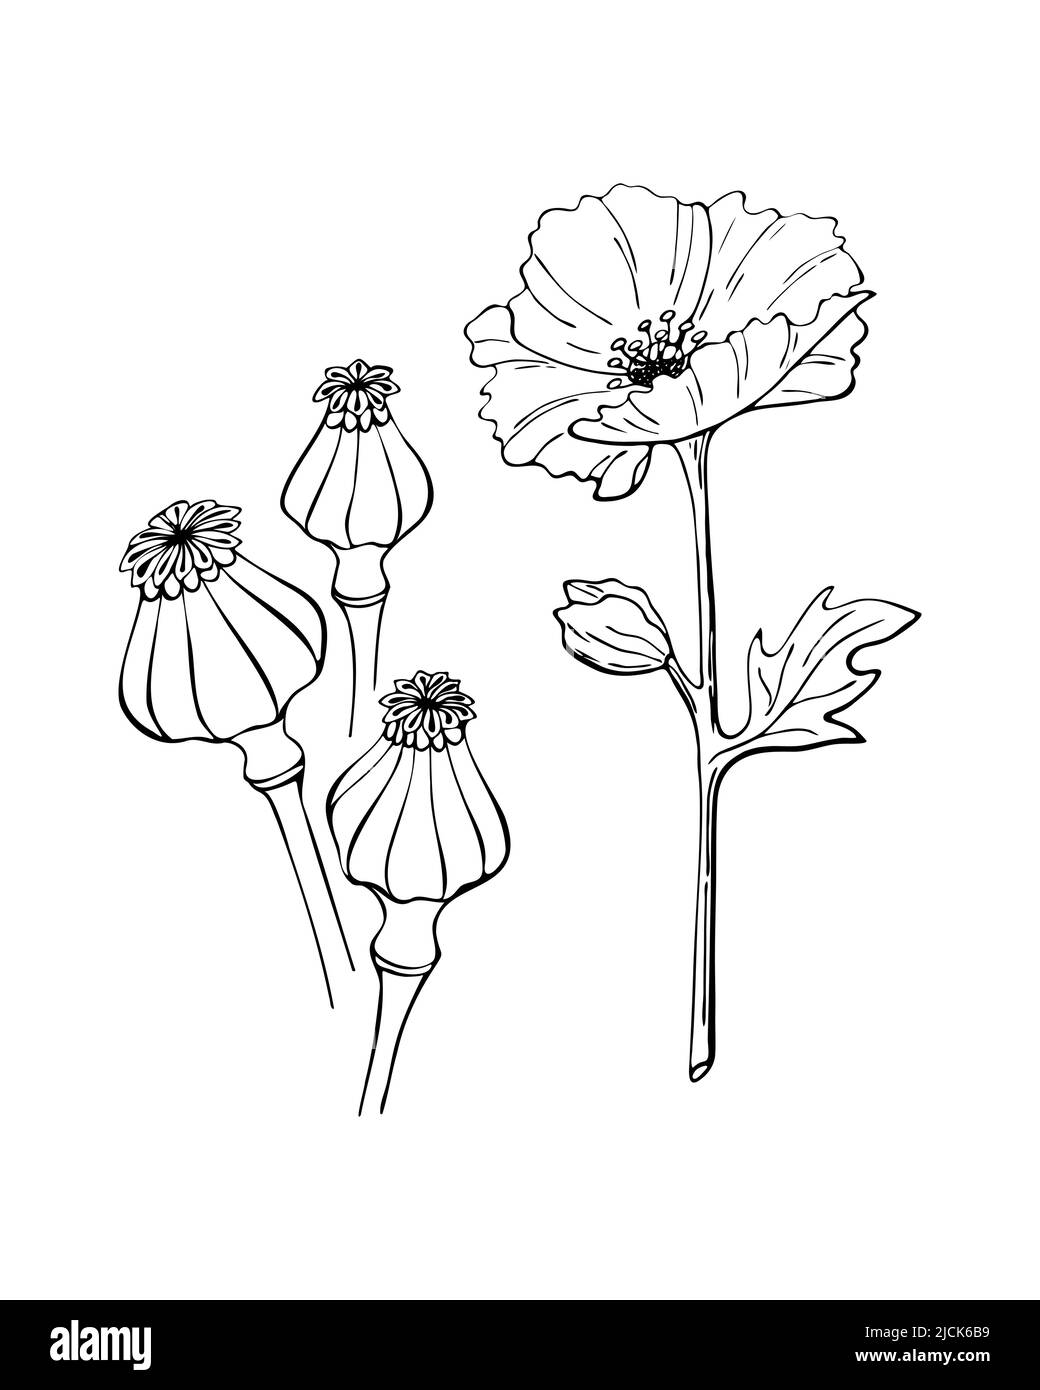 Fleur de pavot grain de graines contour dessin de l'oodle dessiné à la main, isolé, fond blanc. Illustration vectorielle Illustration de Vecteur